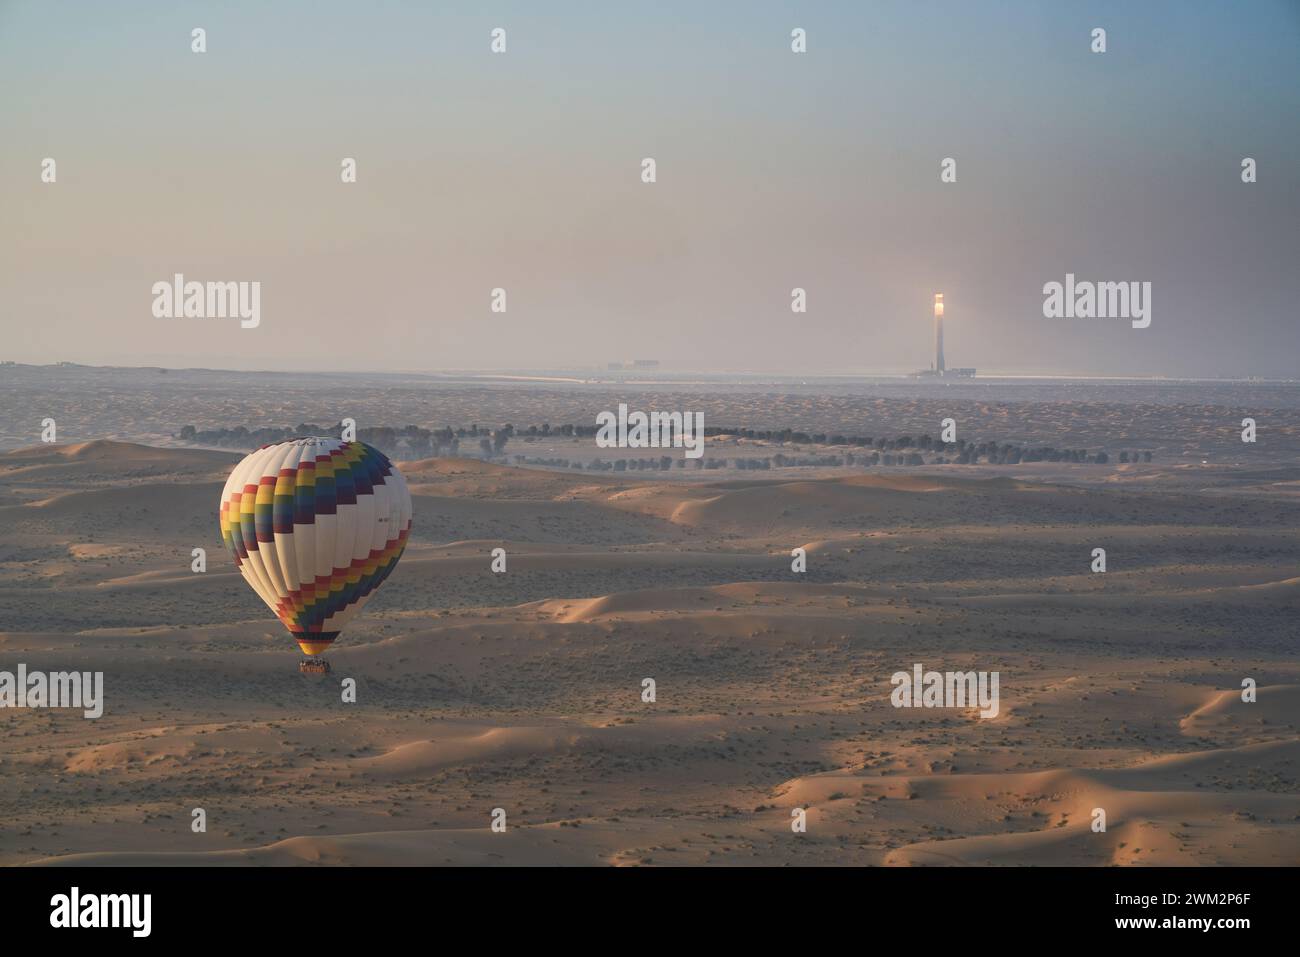 Montgolfières au-dessus du parc solaire Mohammed bin Rashid Al Maktoum, Dubaï, Émirats arabes Unis. Banque D'Images